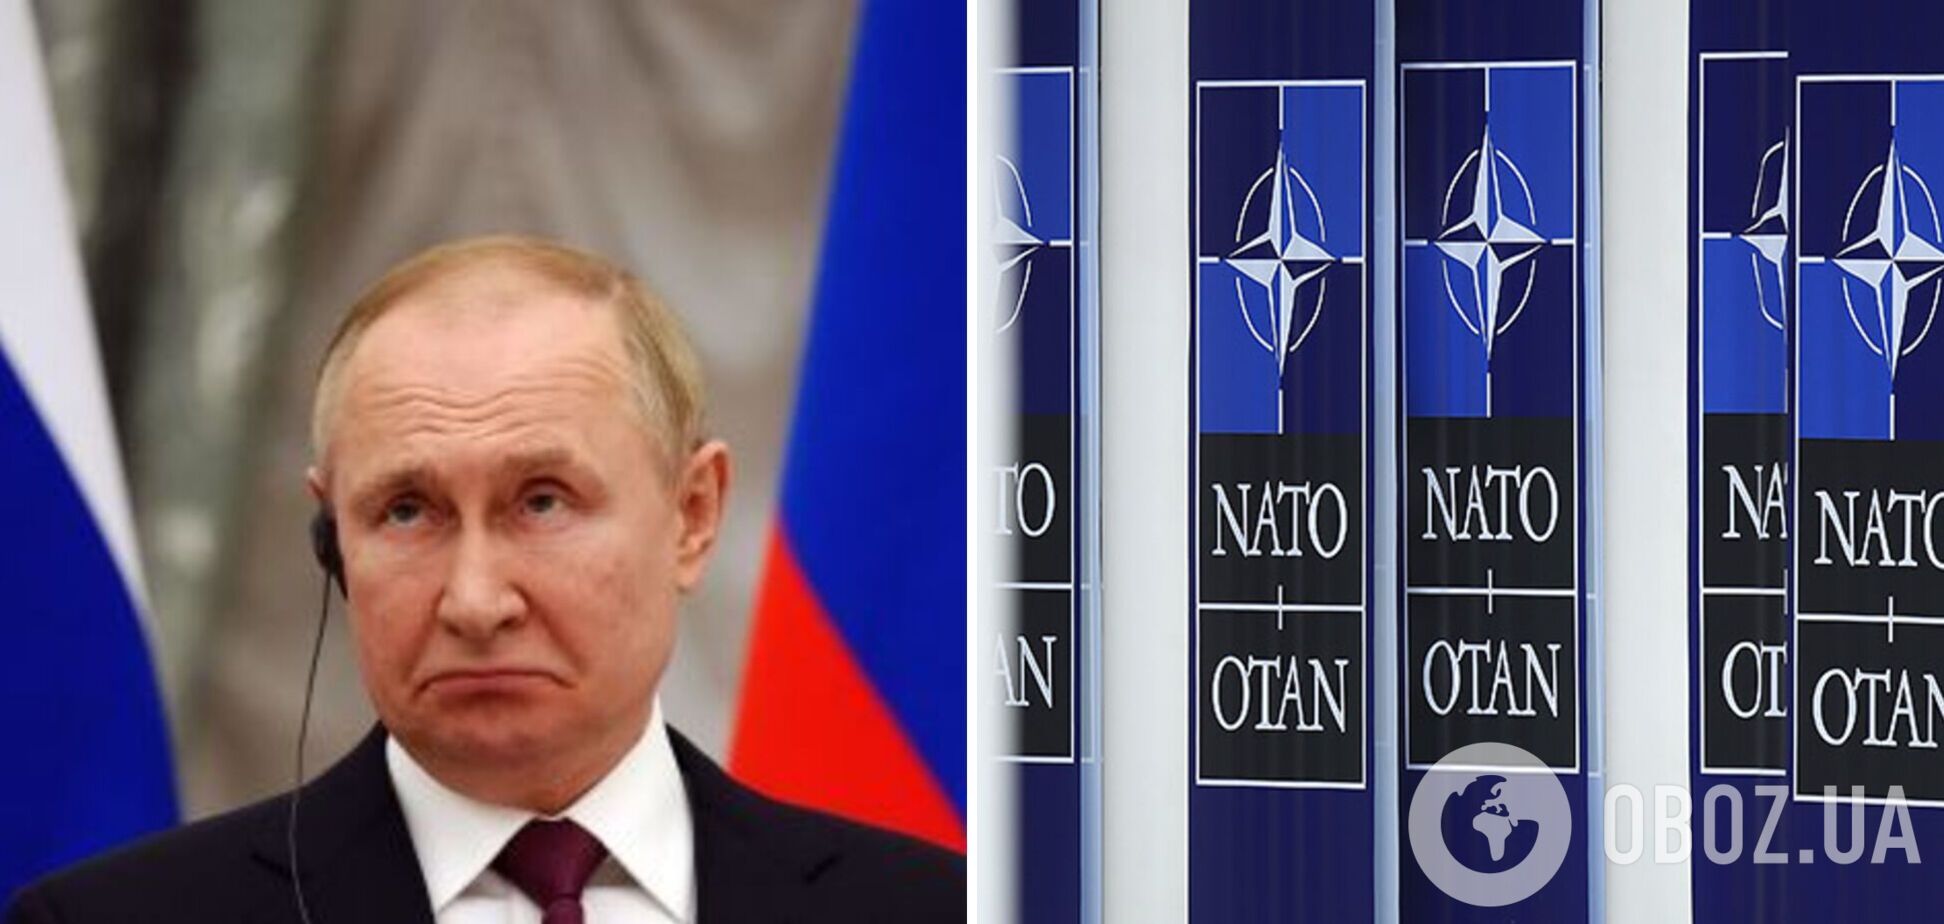 Вторжение РФ в Украину дало толчок укреплению НАТО: Путин сделал блок сильнее – WP